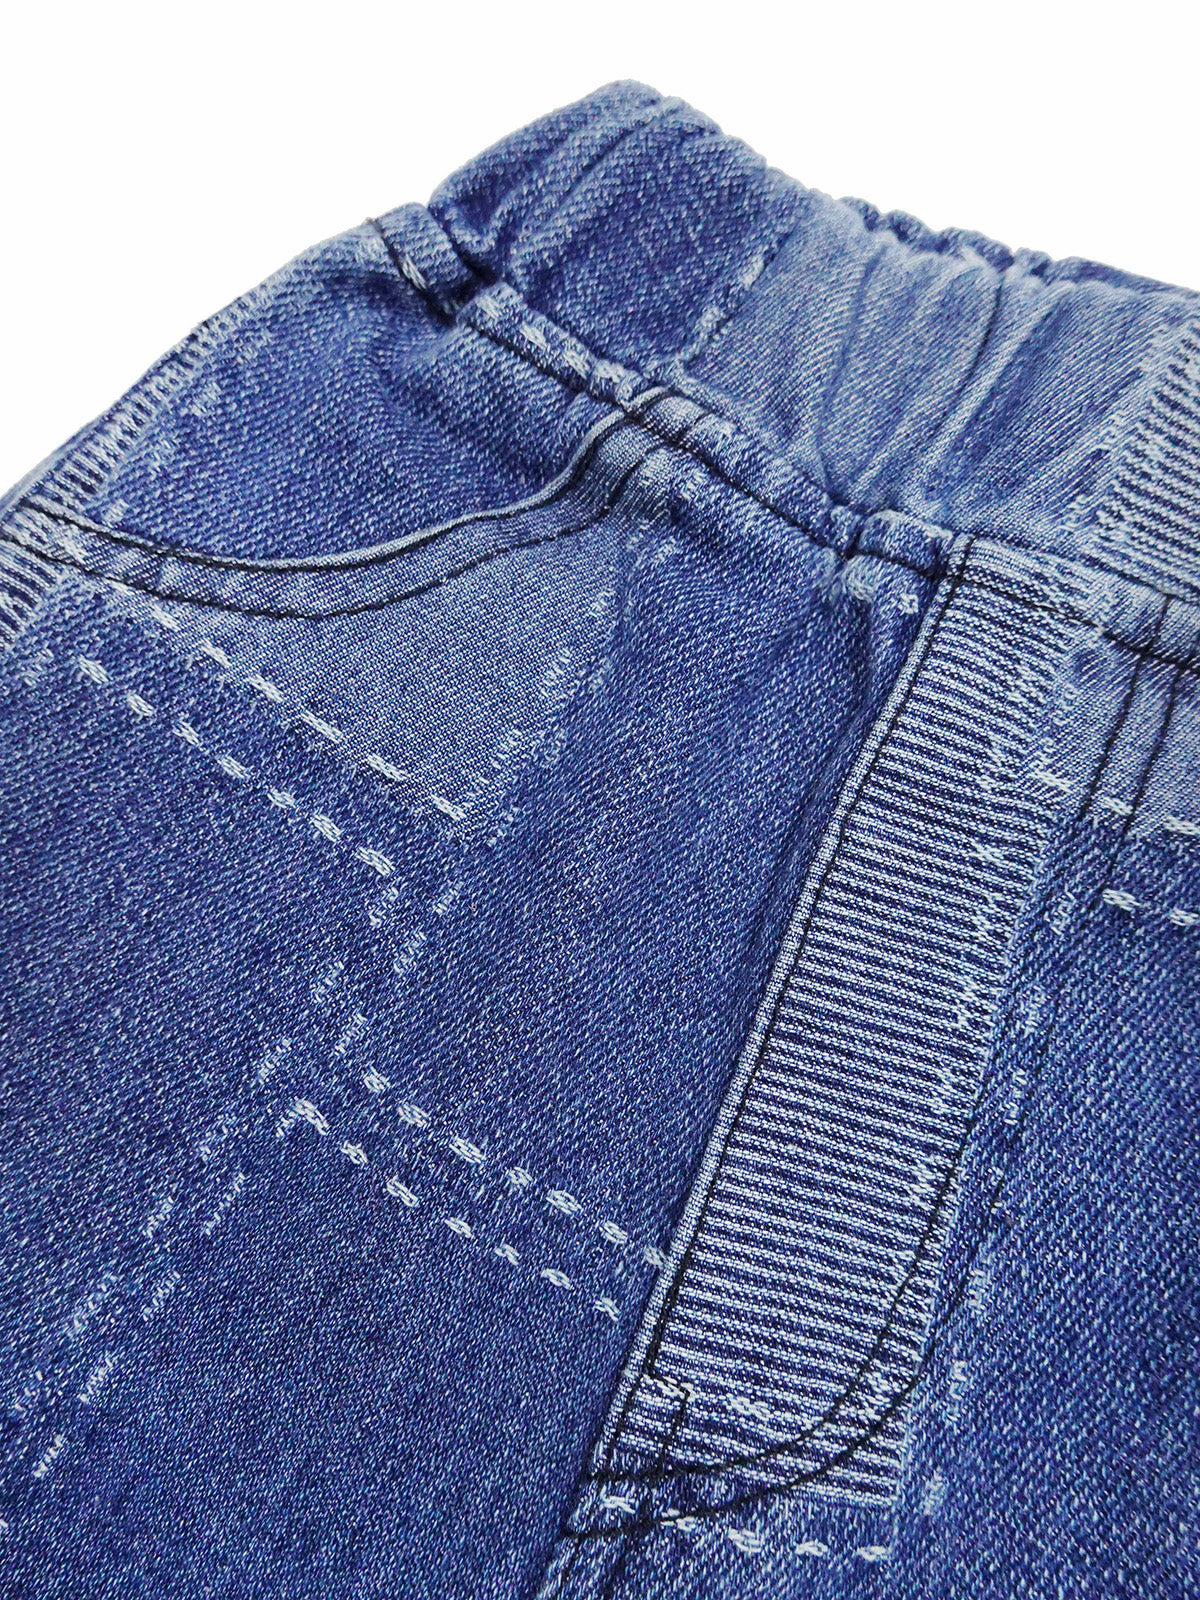 Girl Jeans,Elastic Loose Fit Patchwok Printed Denim Pants